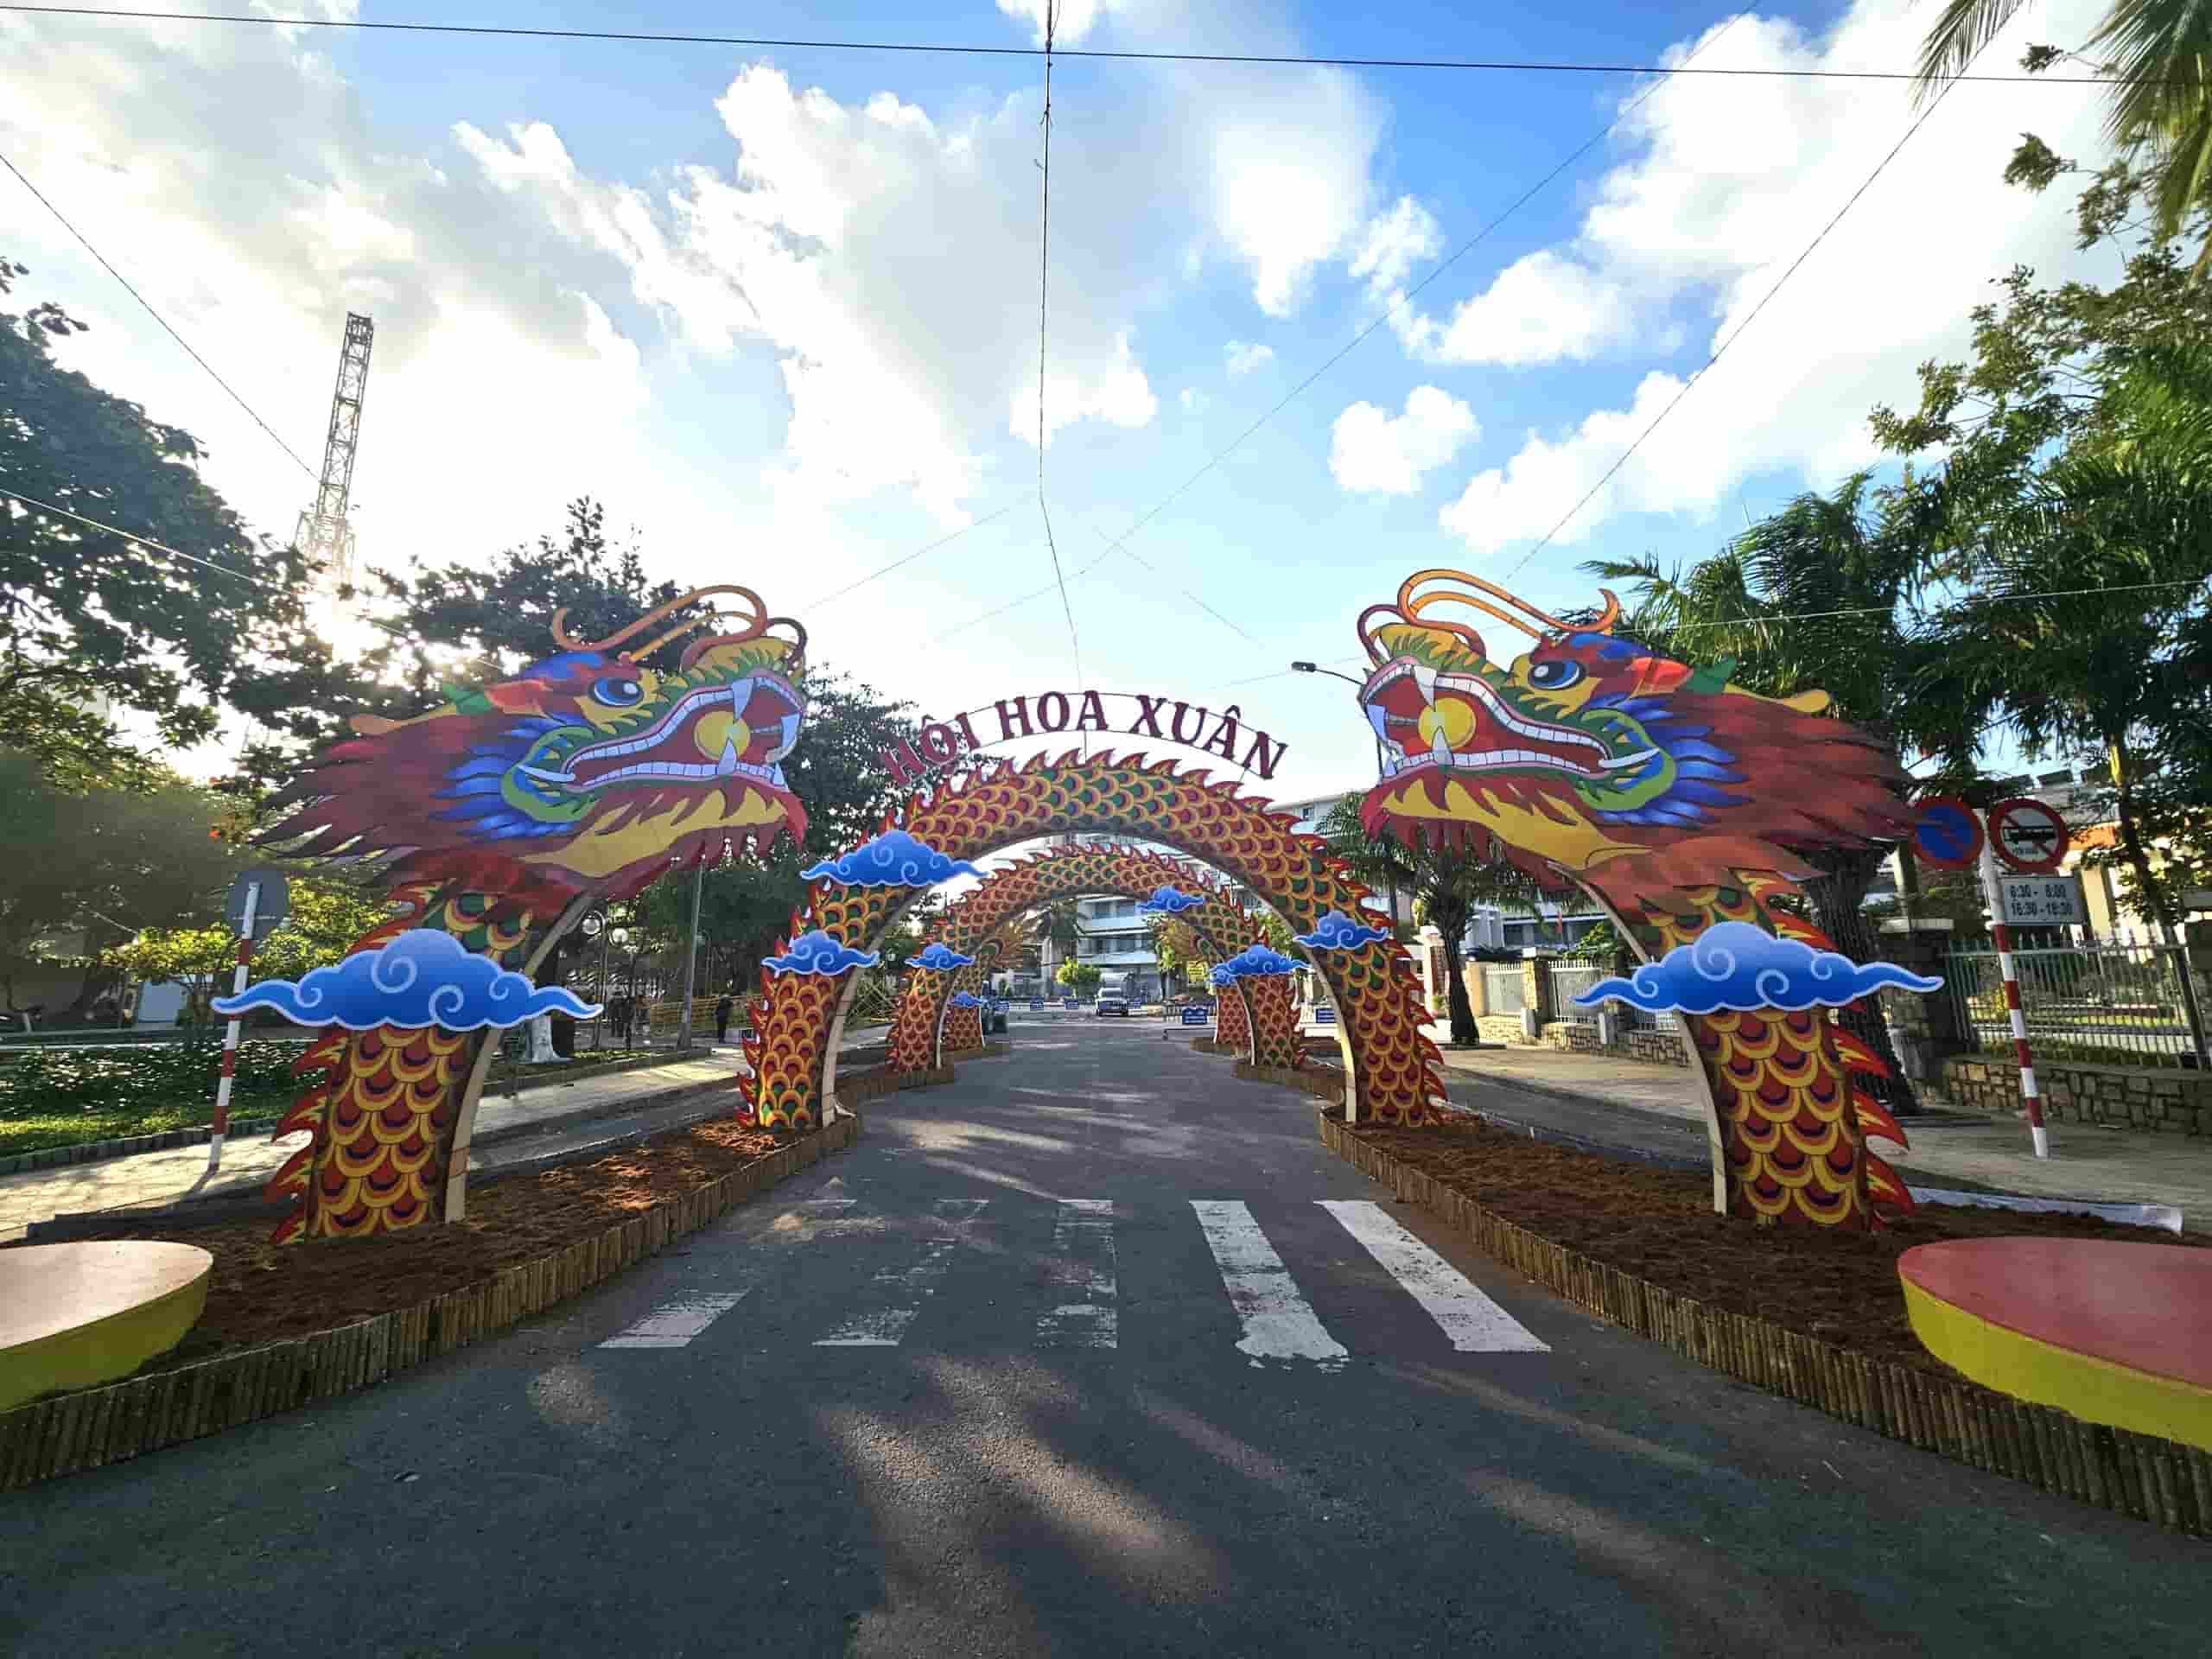 Cổng chào đường hoa xuân ở Nha Trang đa dần hoàn thiện để phục vụ người dân vui Tết. Ảnh: Hữu Long